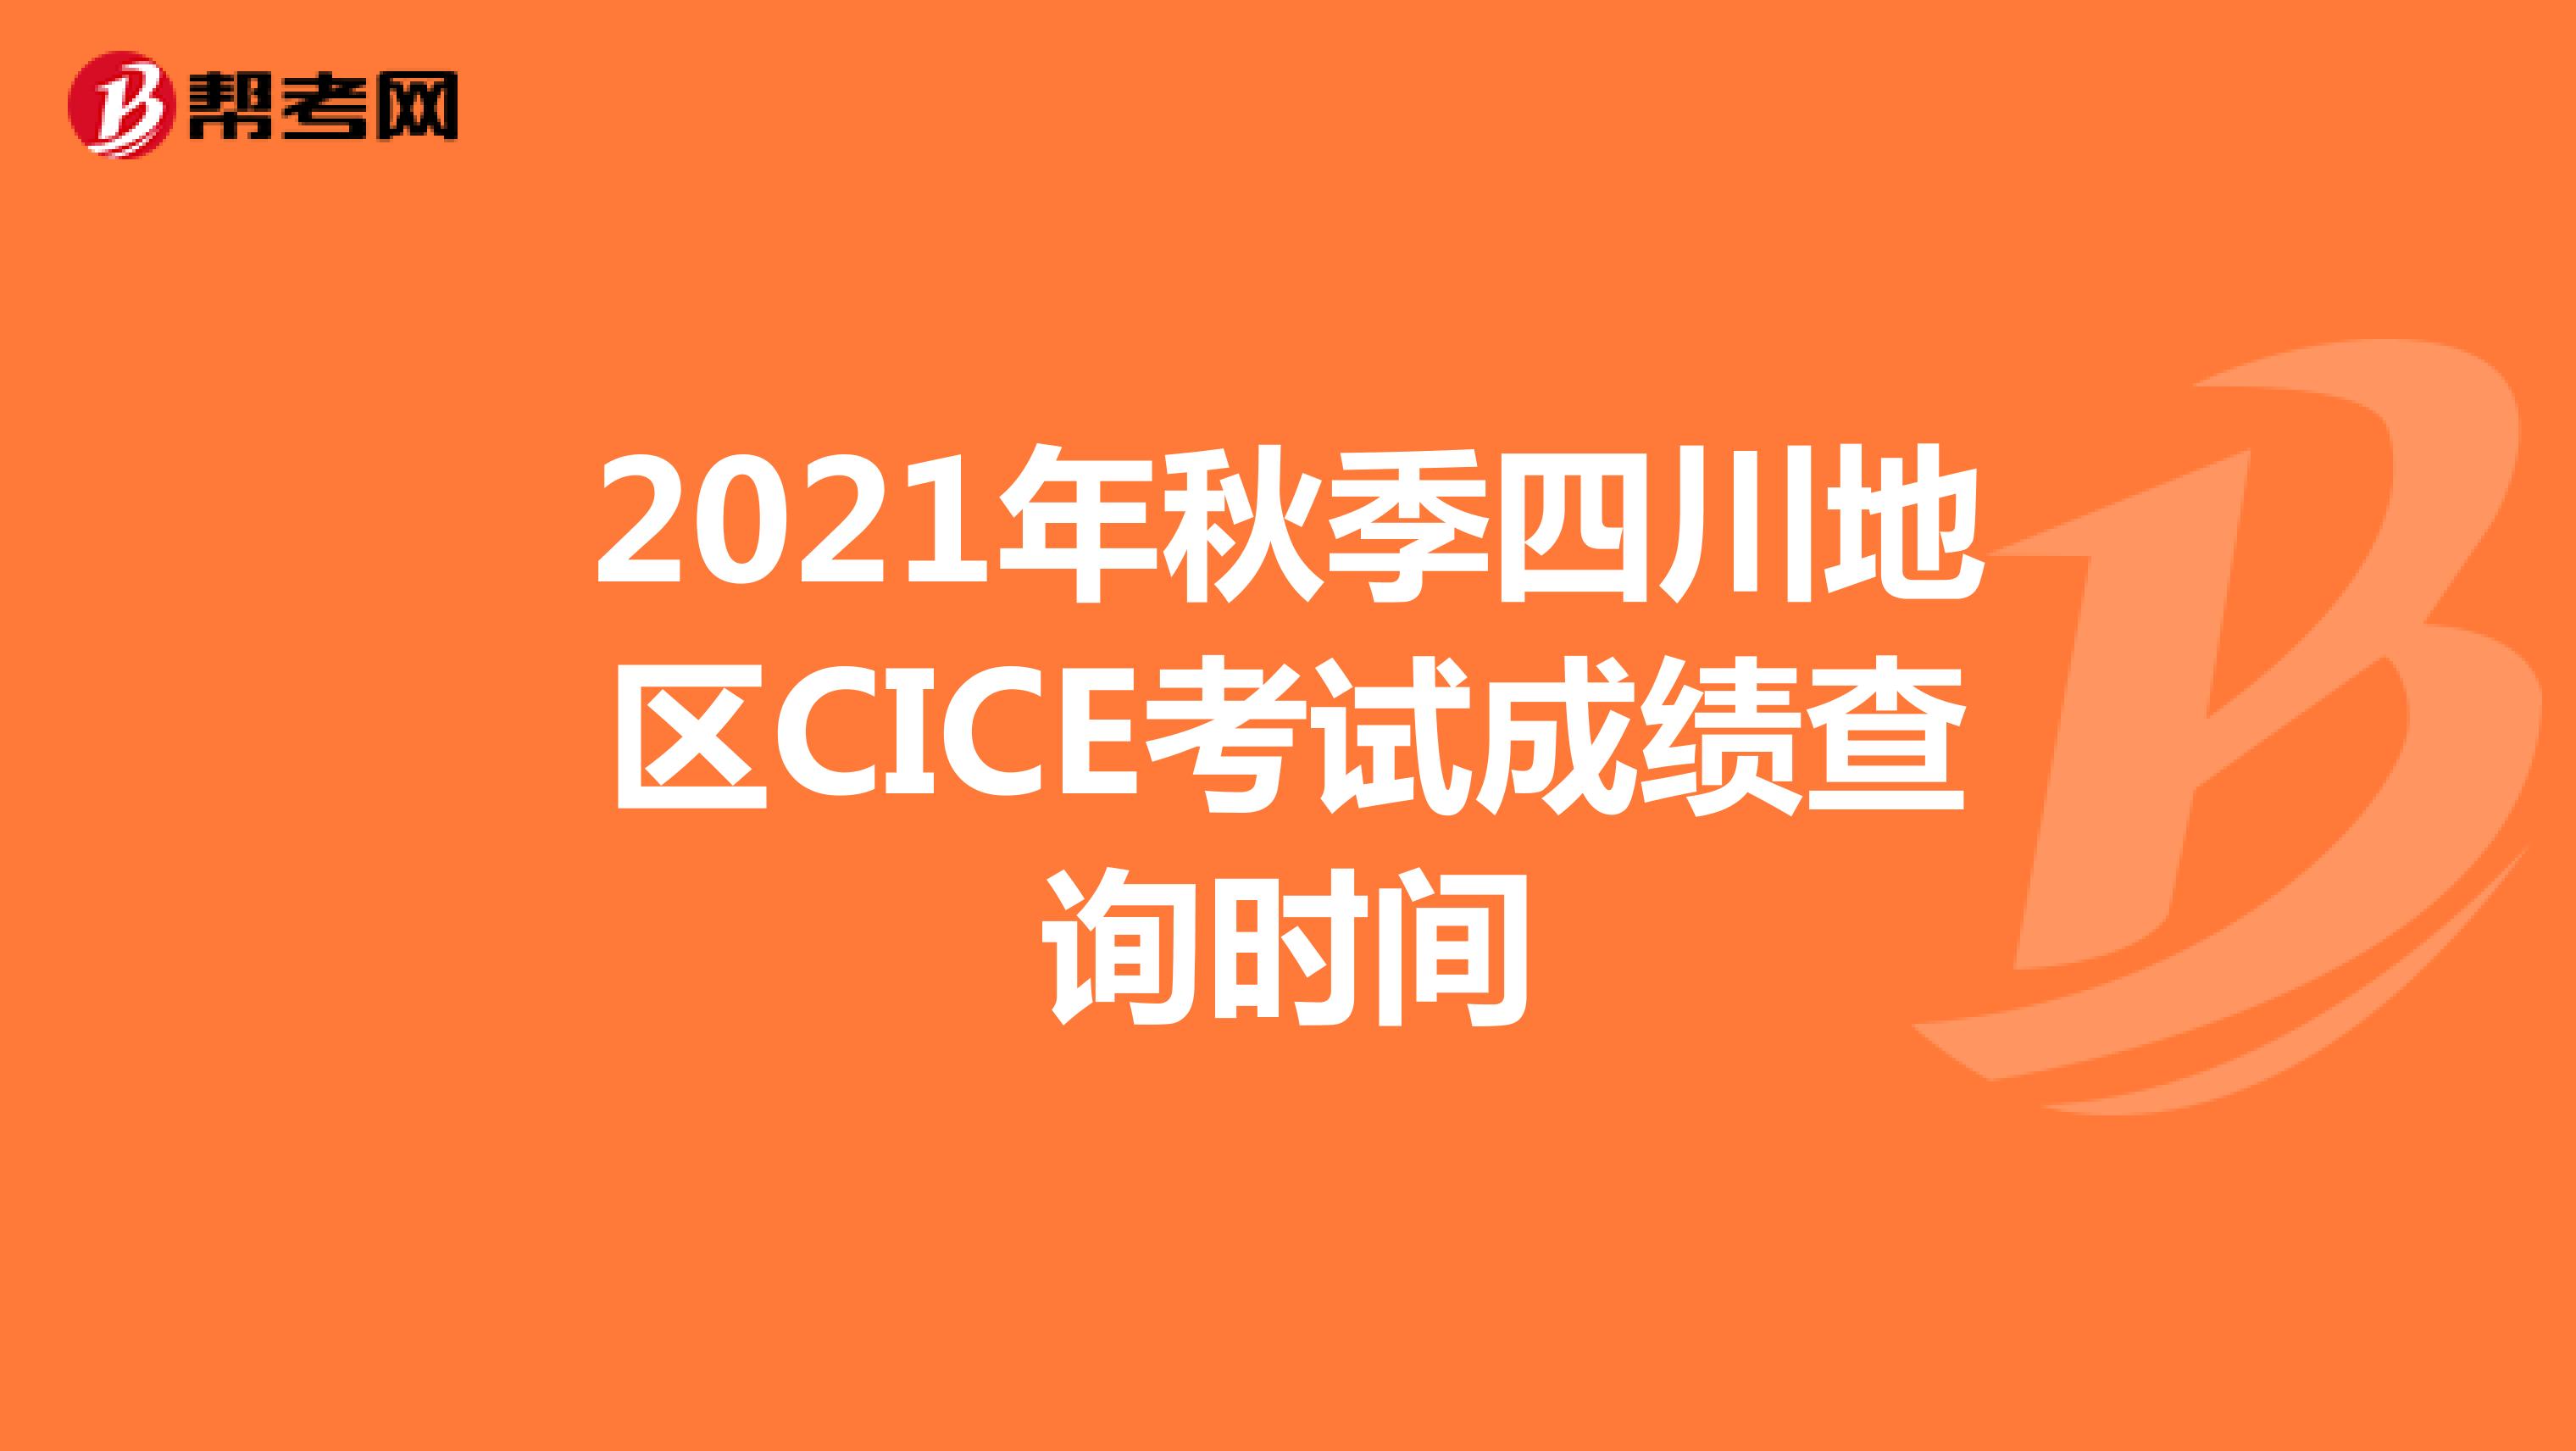 2021年秋季四川地区CICE考试成绩查询时间